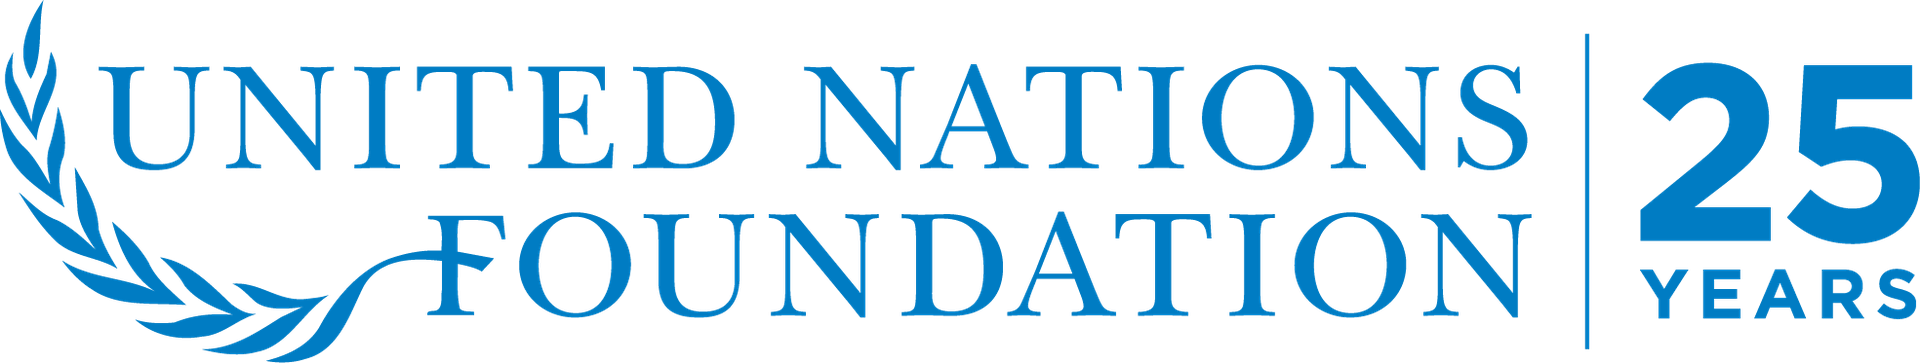 UN Foundation 25th anniversary logo